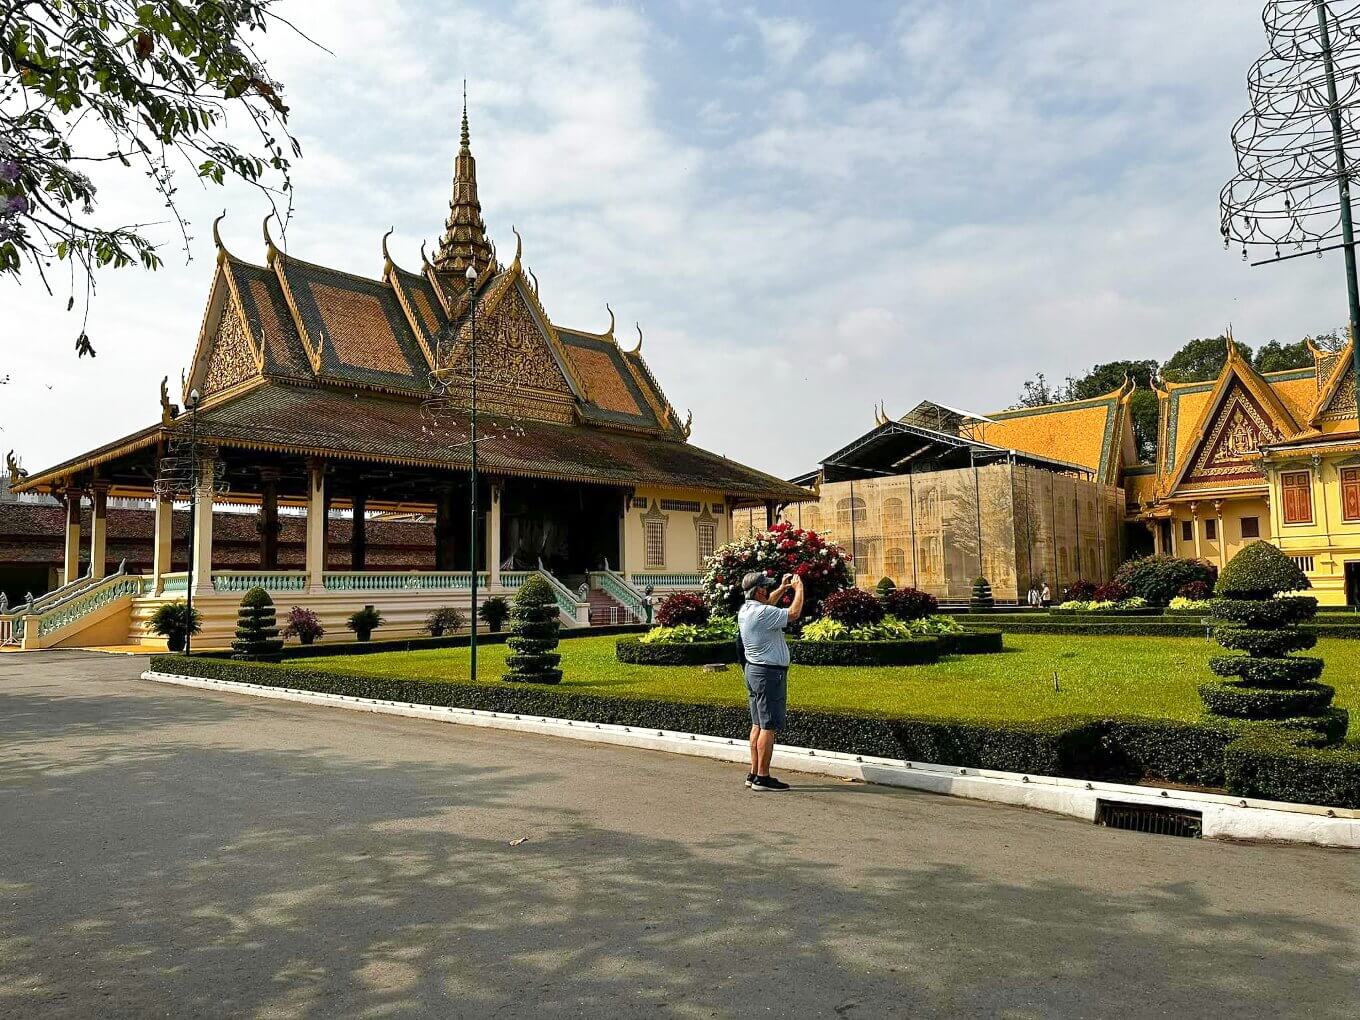 Cambodia-Itinerary-13-Days-Angkor-Wat-Siem-Reap-Royal-Palace-Phnom-Penh-9.jpeg